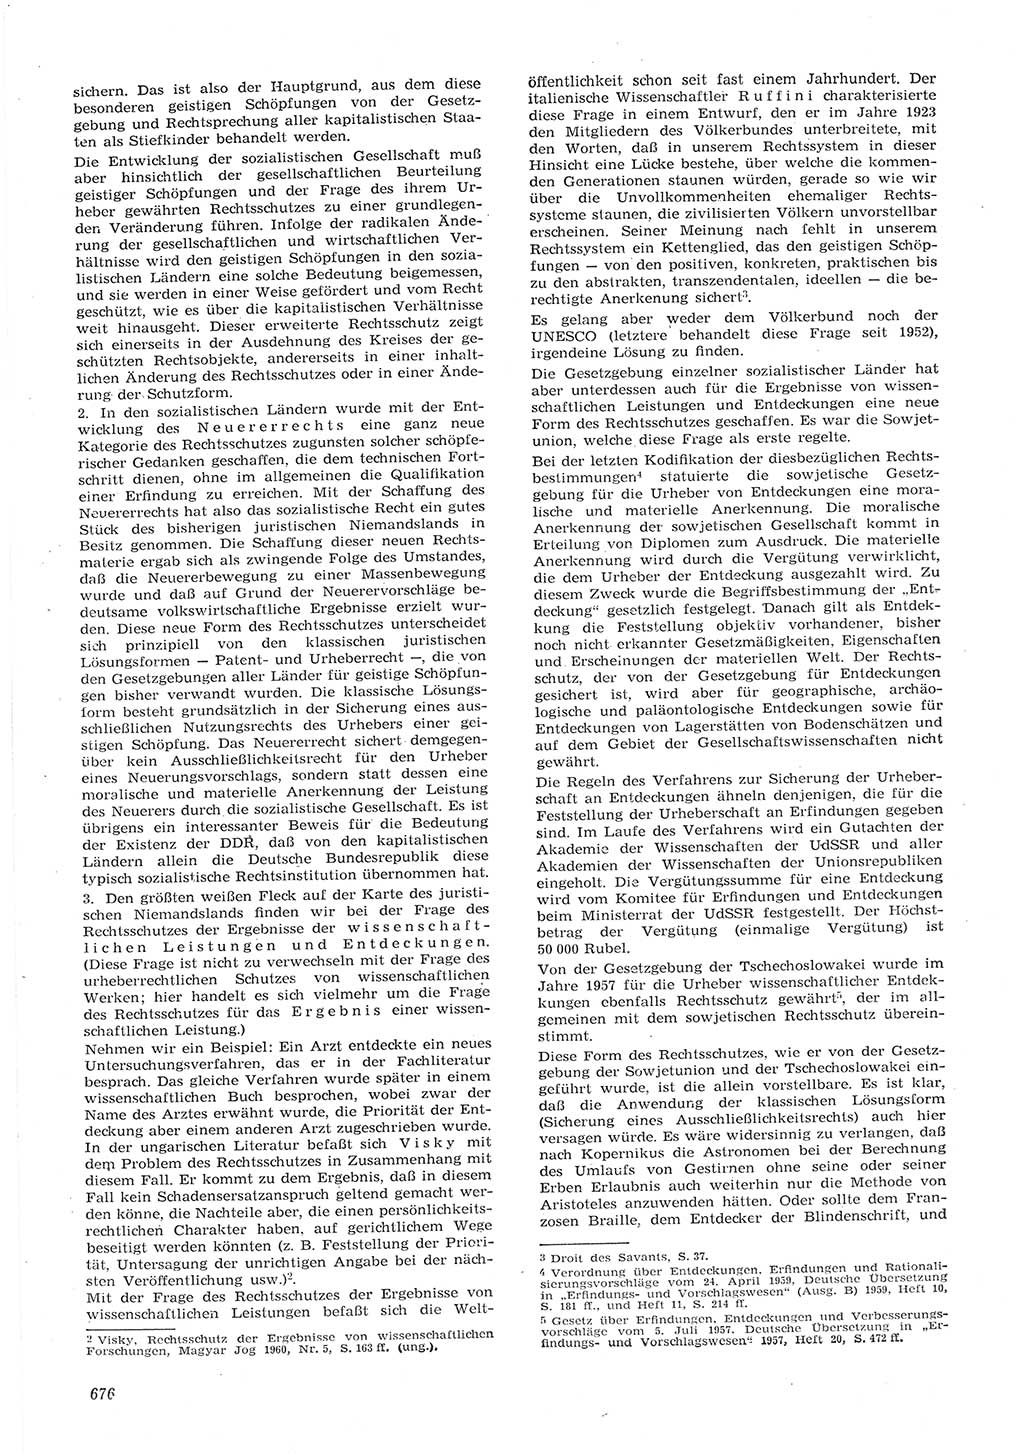 Neue Justiz (NJ), Zeitschrift für Recht und Rechtswissenschaft [Deutsche Demokratische Republik (DDR)], 15. Jahrgang 1961, Seite 676 (NJ DDR 1961, S. 676)